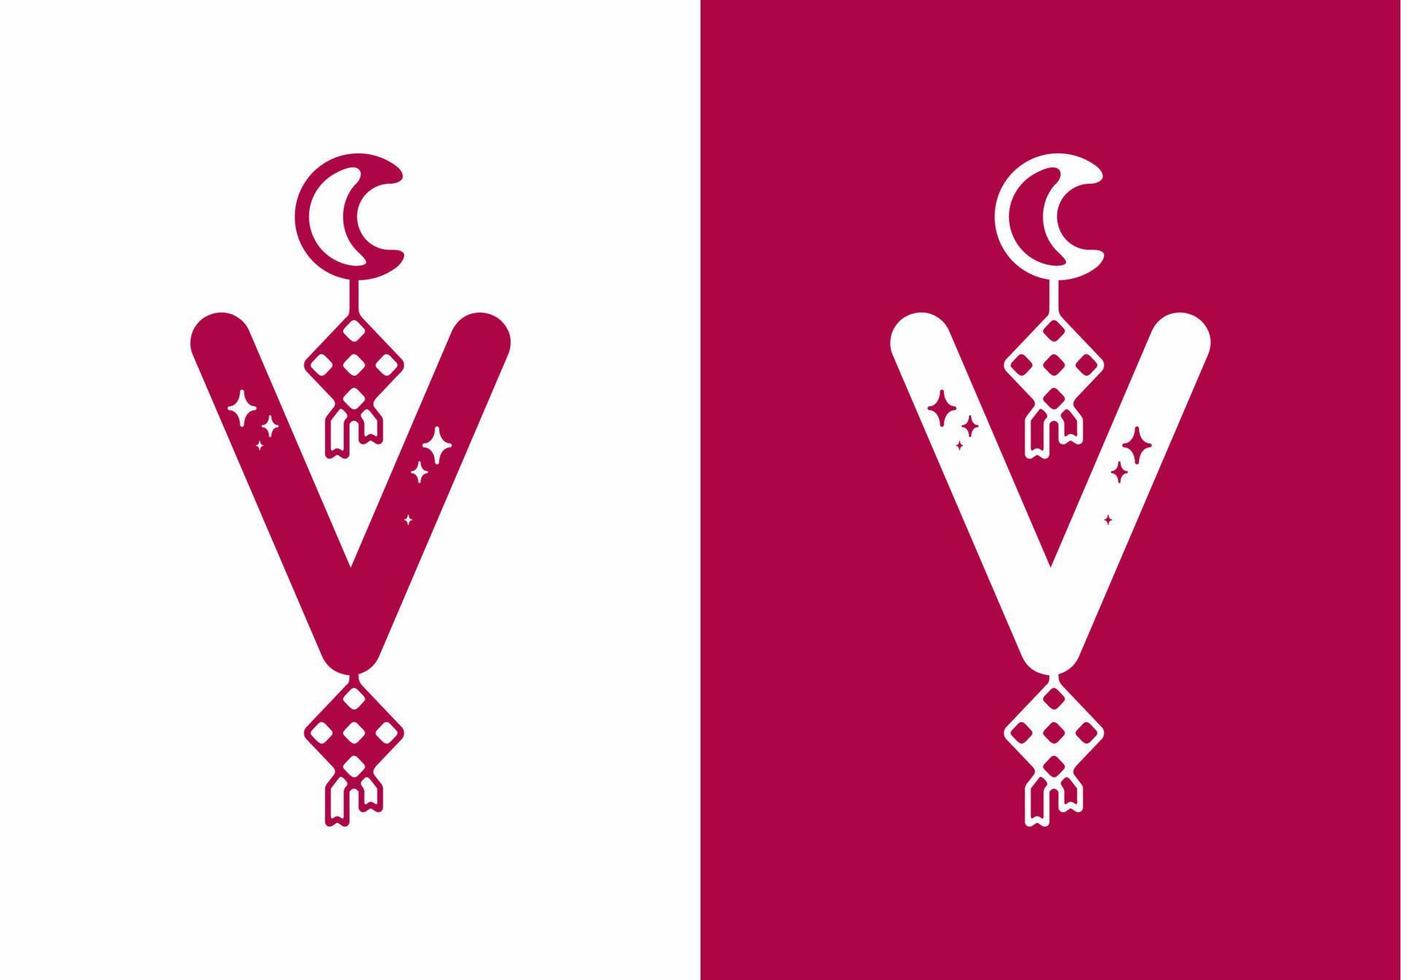 roze wit van v beginletter in ramadan thema vector